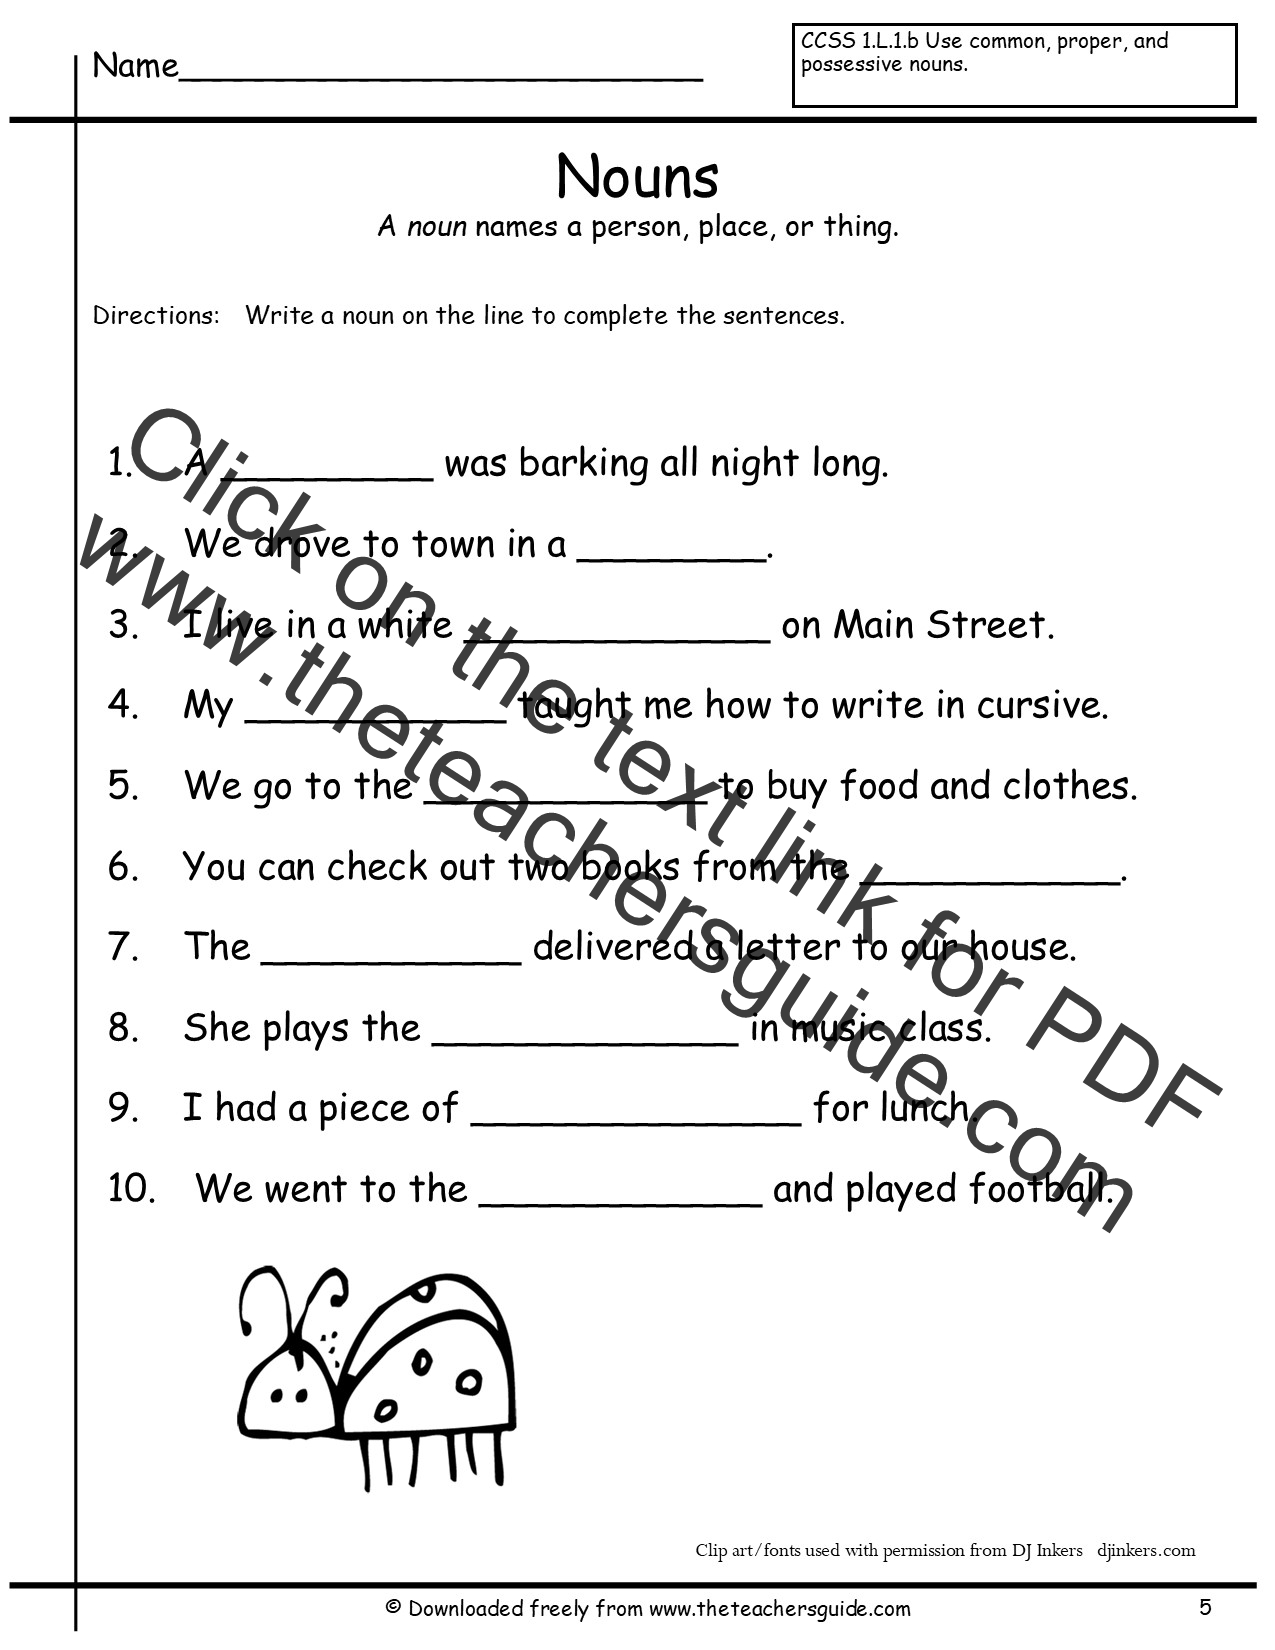 nouns-kindergarten-worksheets-made-by-teachers